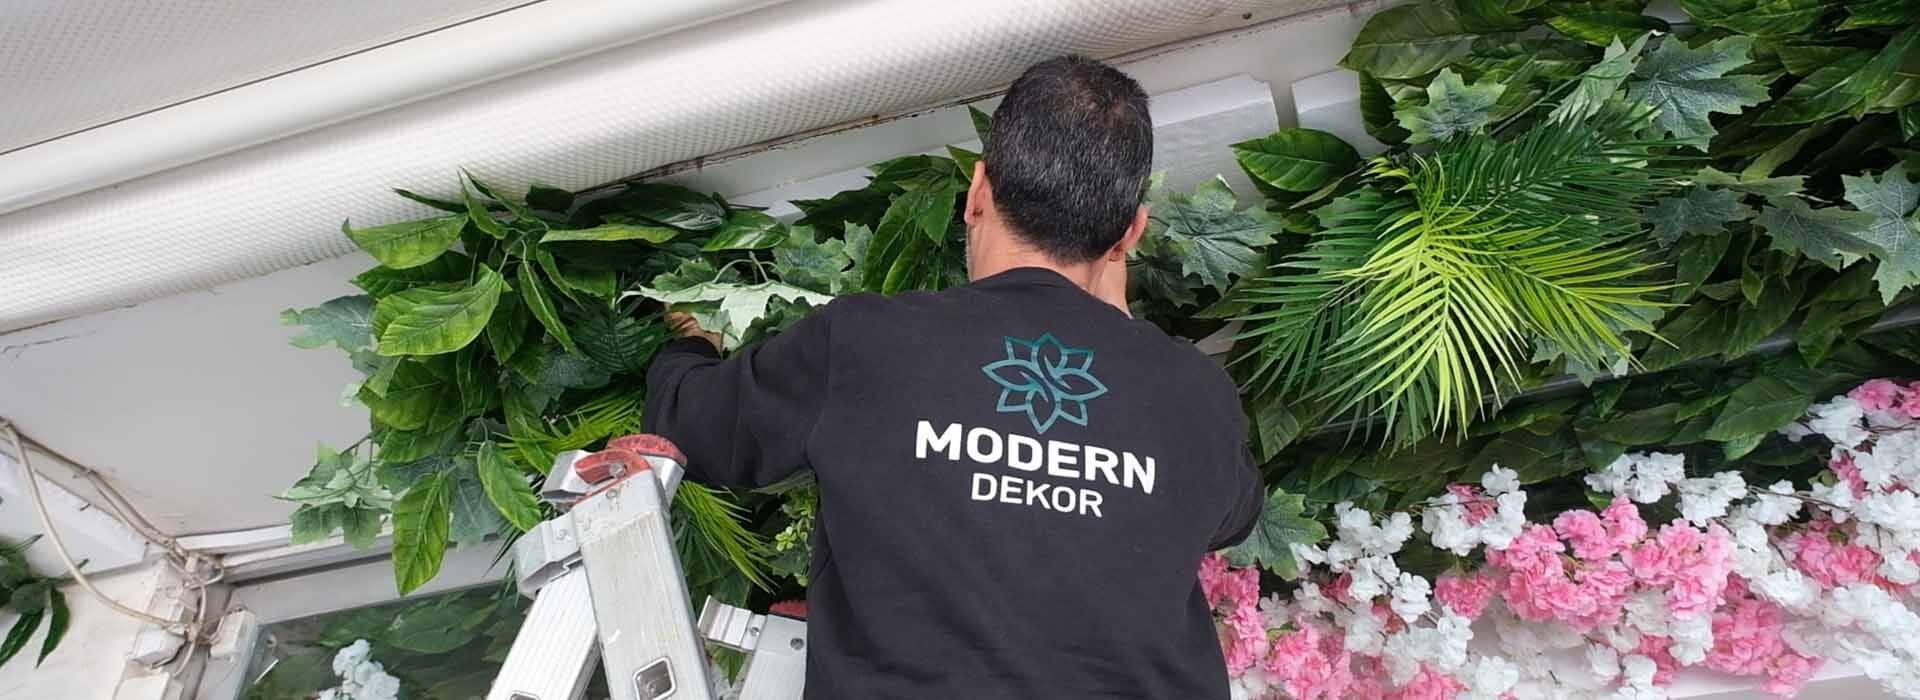 Modern Dekor | Yapay Çiçek, Dikey Bahçe ve Yapay Ağaç